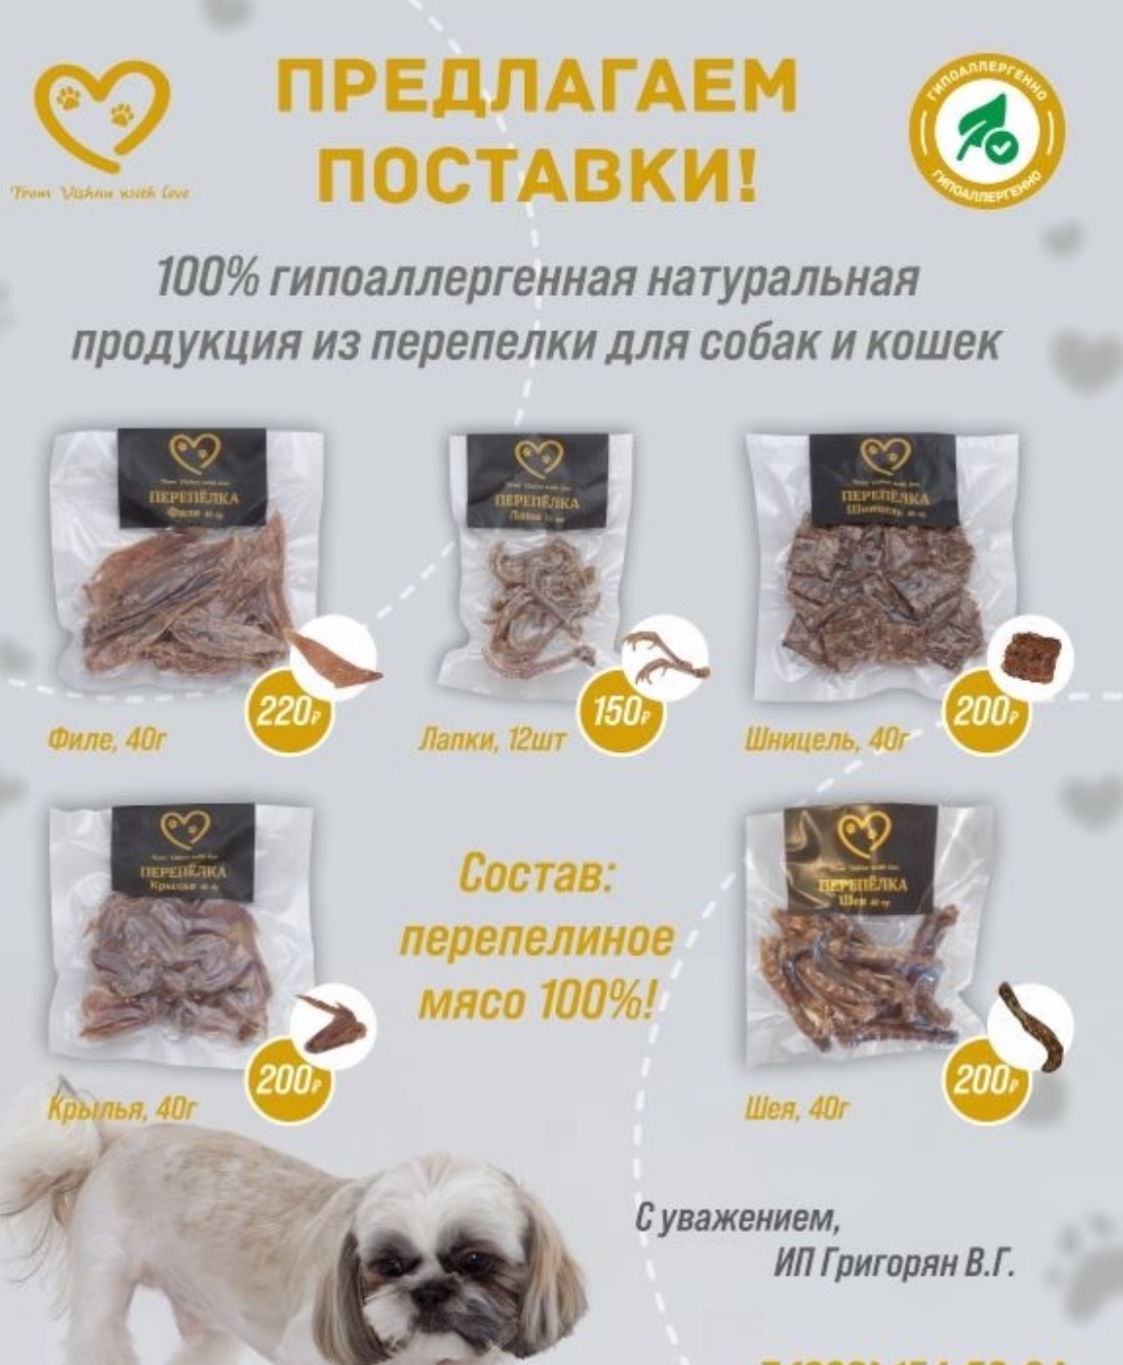 Производство лакомок для домашних животных из перепелиного мяса